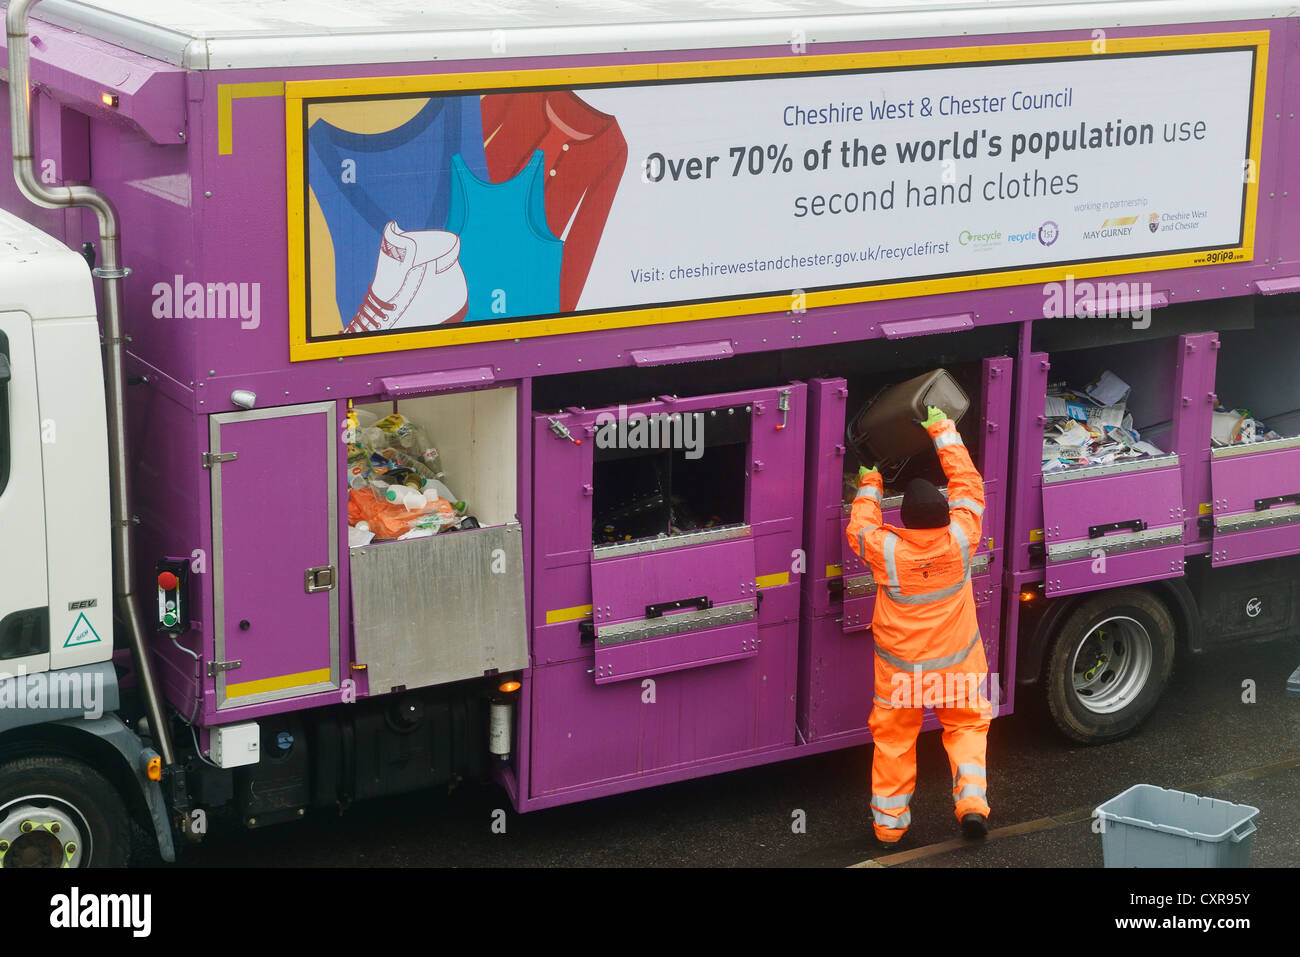 Raccolta rifiuti e smistamento dei rifiuti domestici in Cheshire con cernita manuale per la carta, plastica, lattine e rifiuti alimentari. Foto Stock